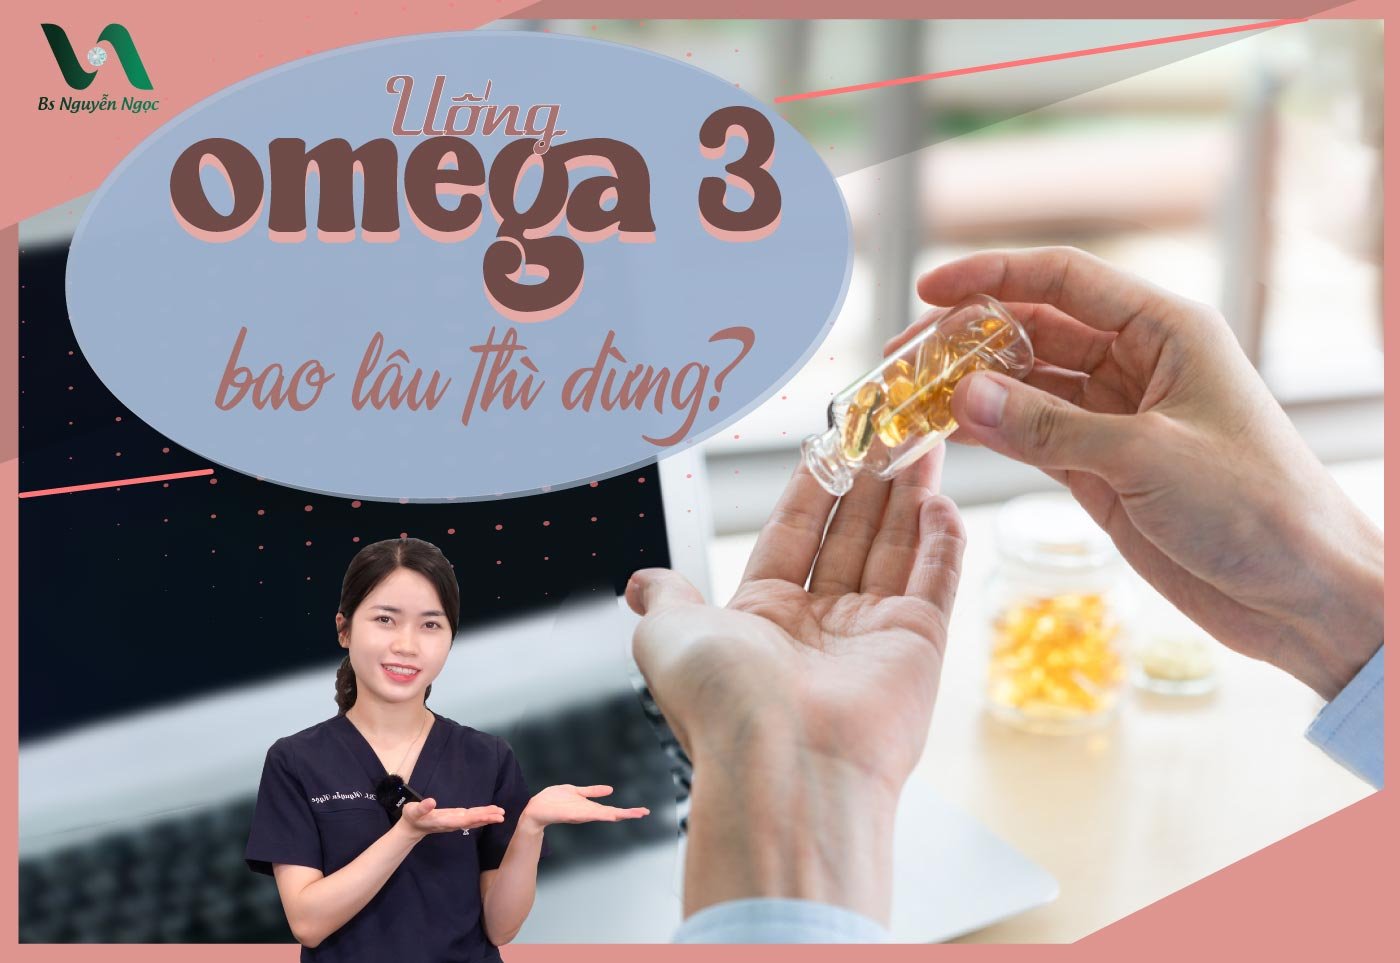 Uống Omega 3 bao lâu thì dừng?